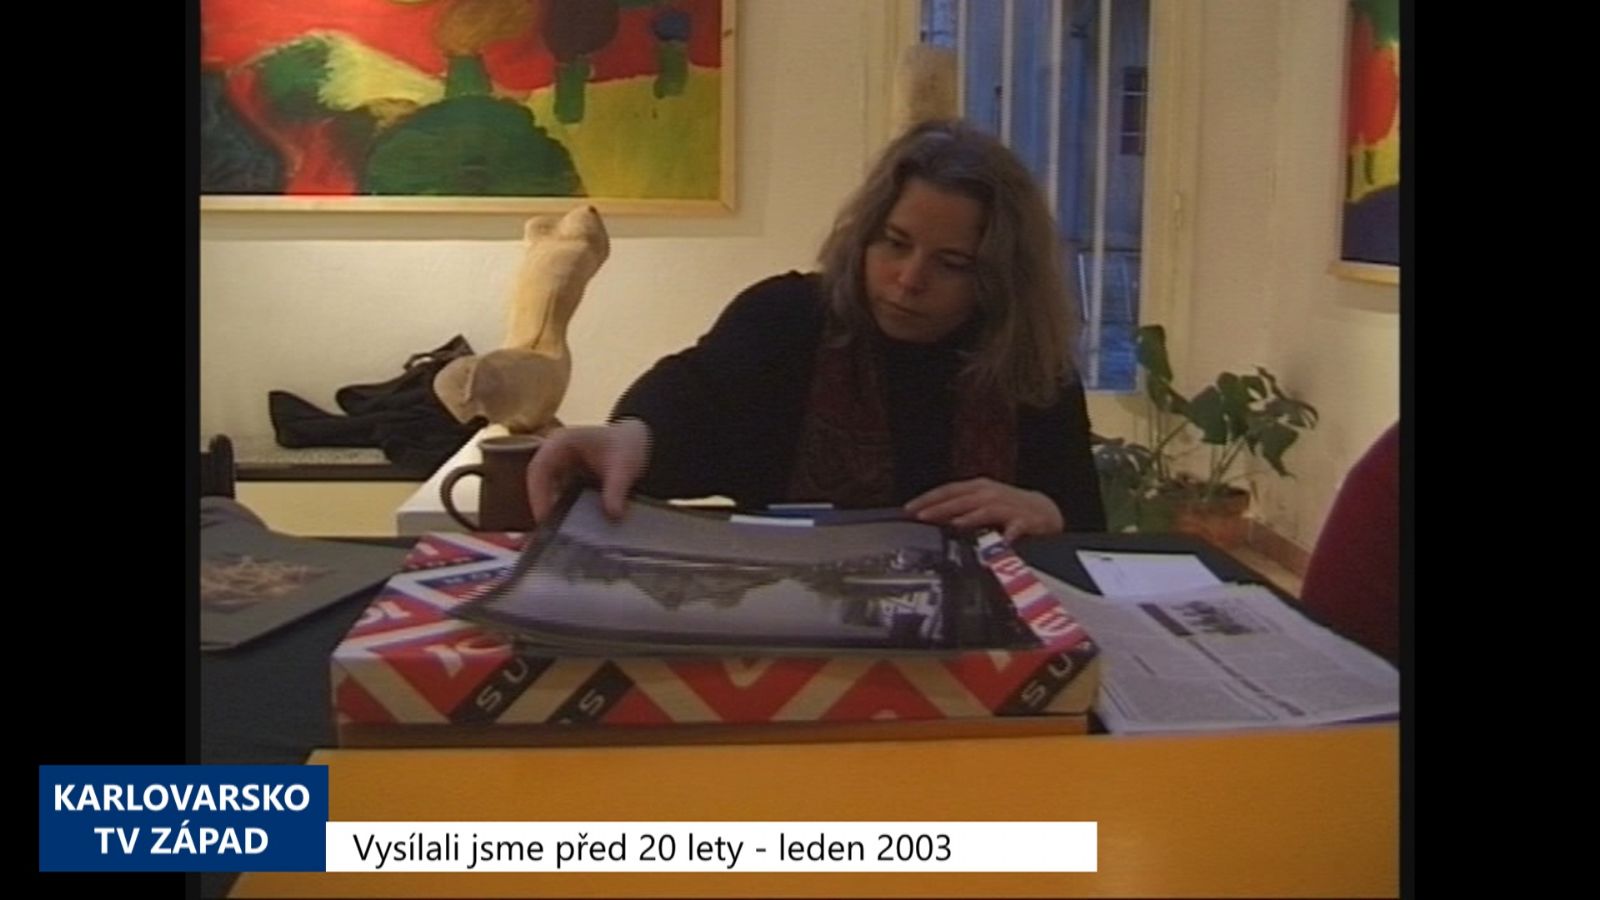 2003 – Cheb: Galerie sdružuje Ateliér a chystá Chebské dvorky (TV Západ)